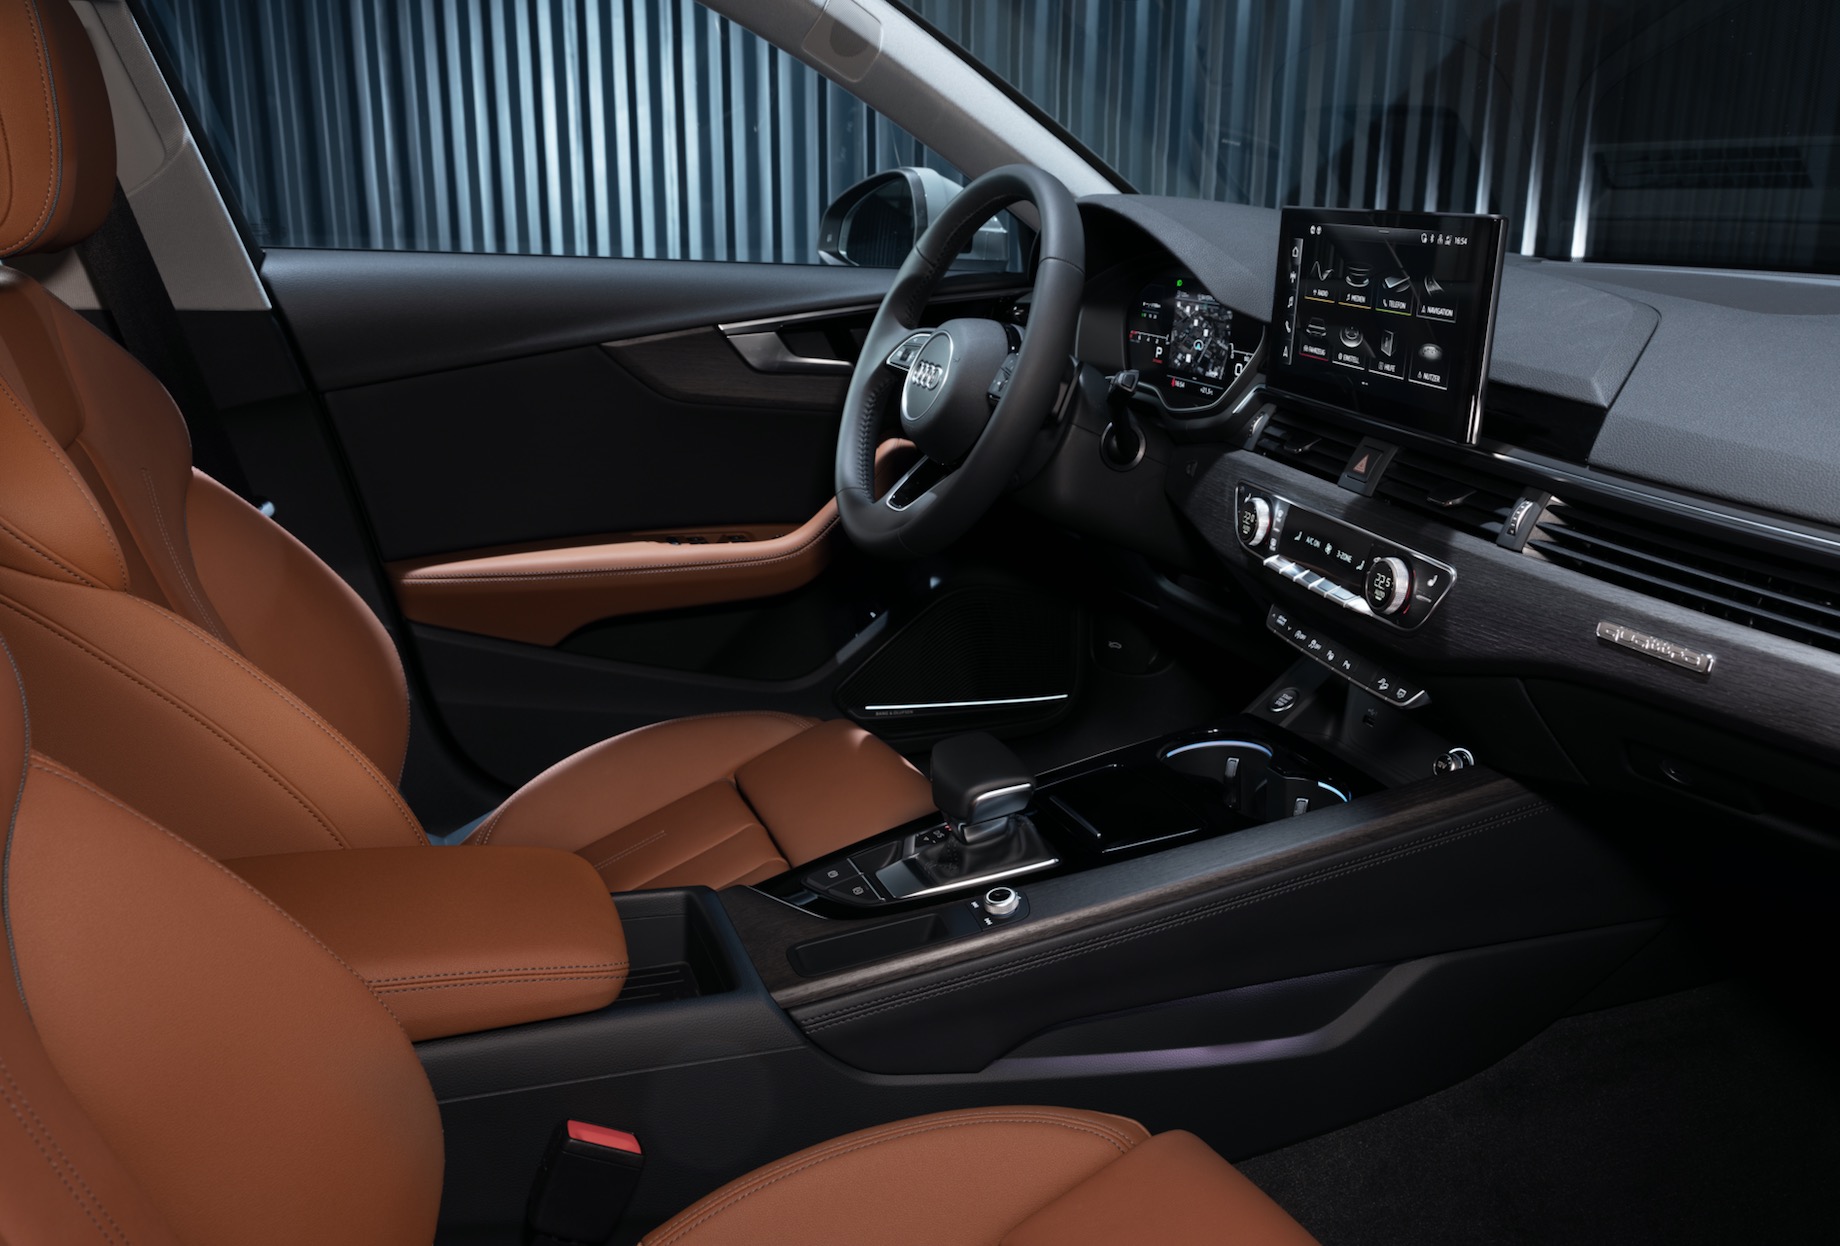 Audi A4 Facelift 2020 S4 Limousine Vs A4 Avant Und Allroad